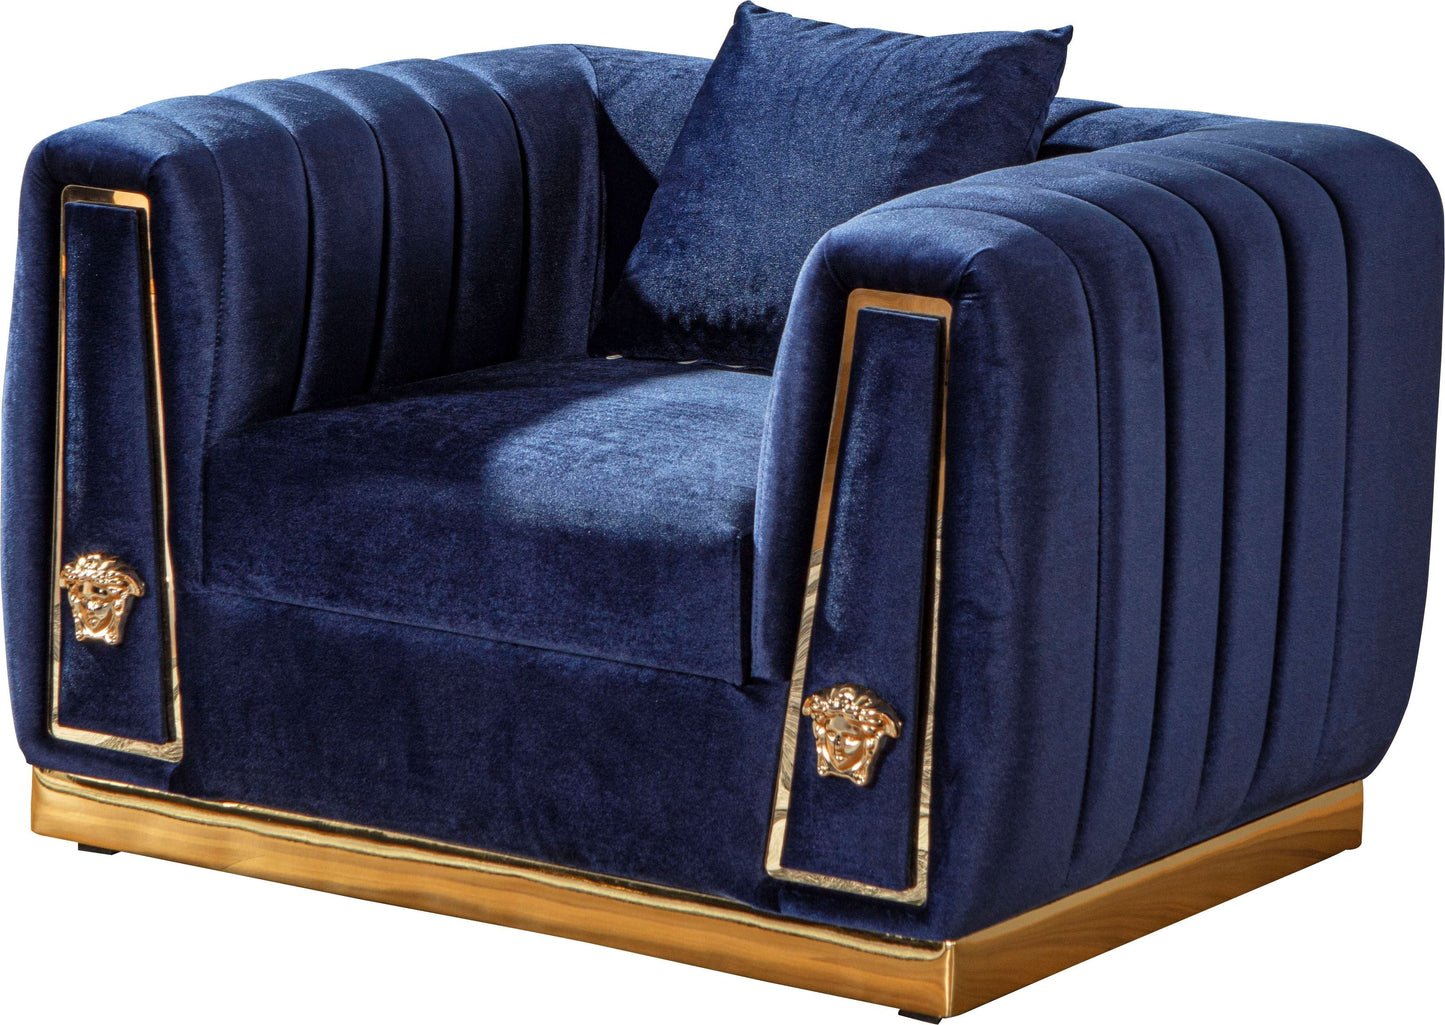 Royal Sofa & Loveseat Velvet Upholstery - Burgundy